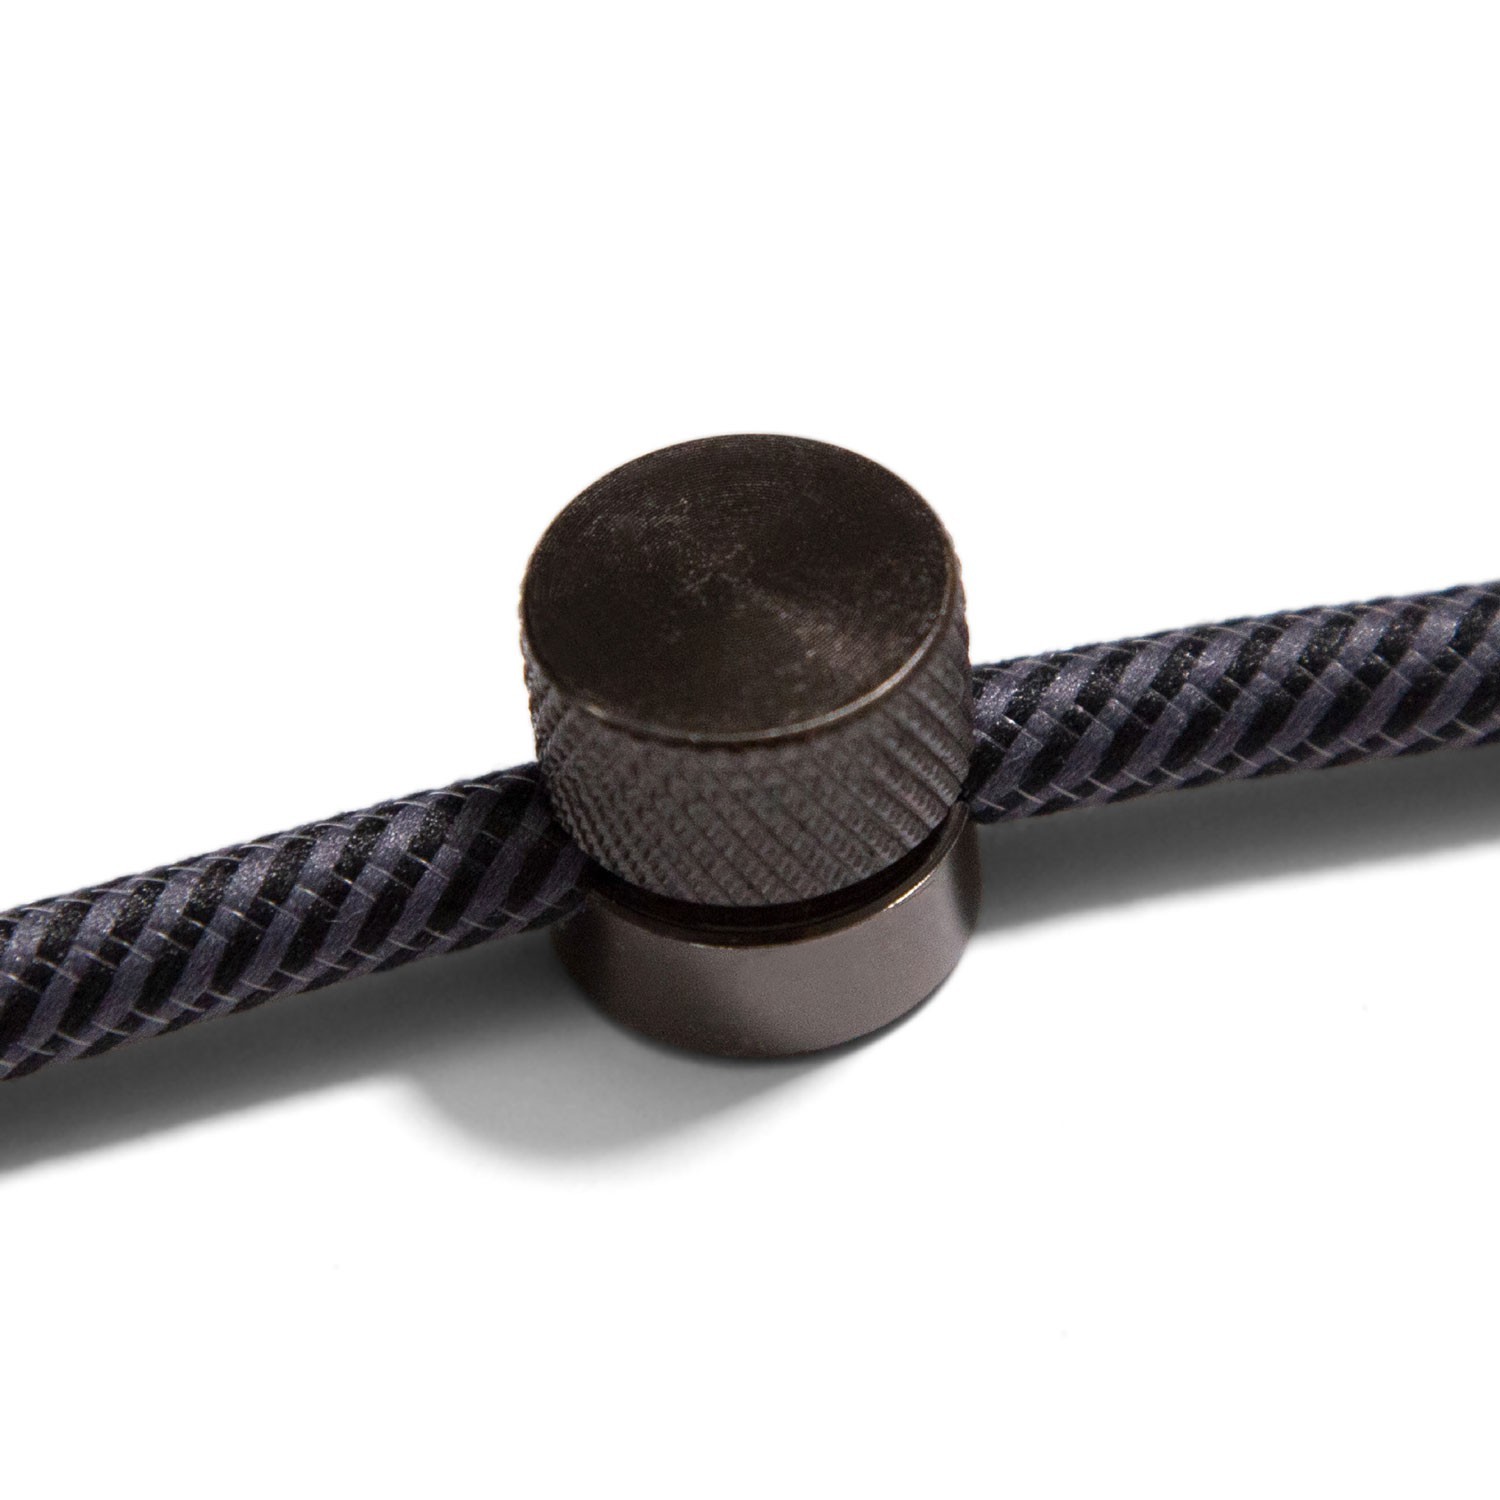 Sarè - kovinsko vodilo za tekstilni kabel - 2 kos